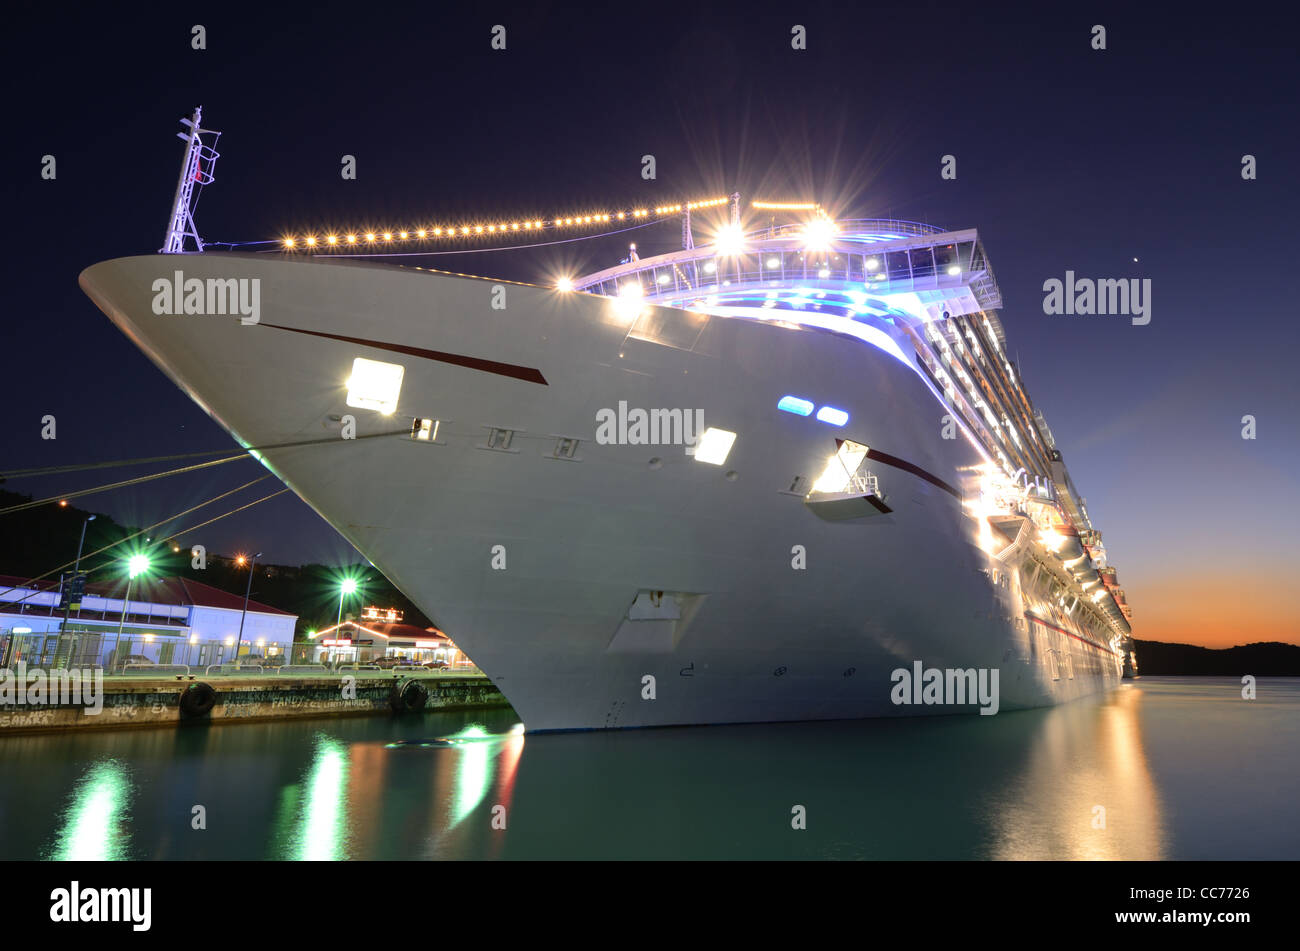 Cruise ship docked at twilight Stock Photo